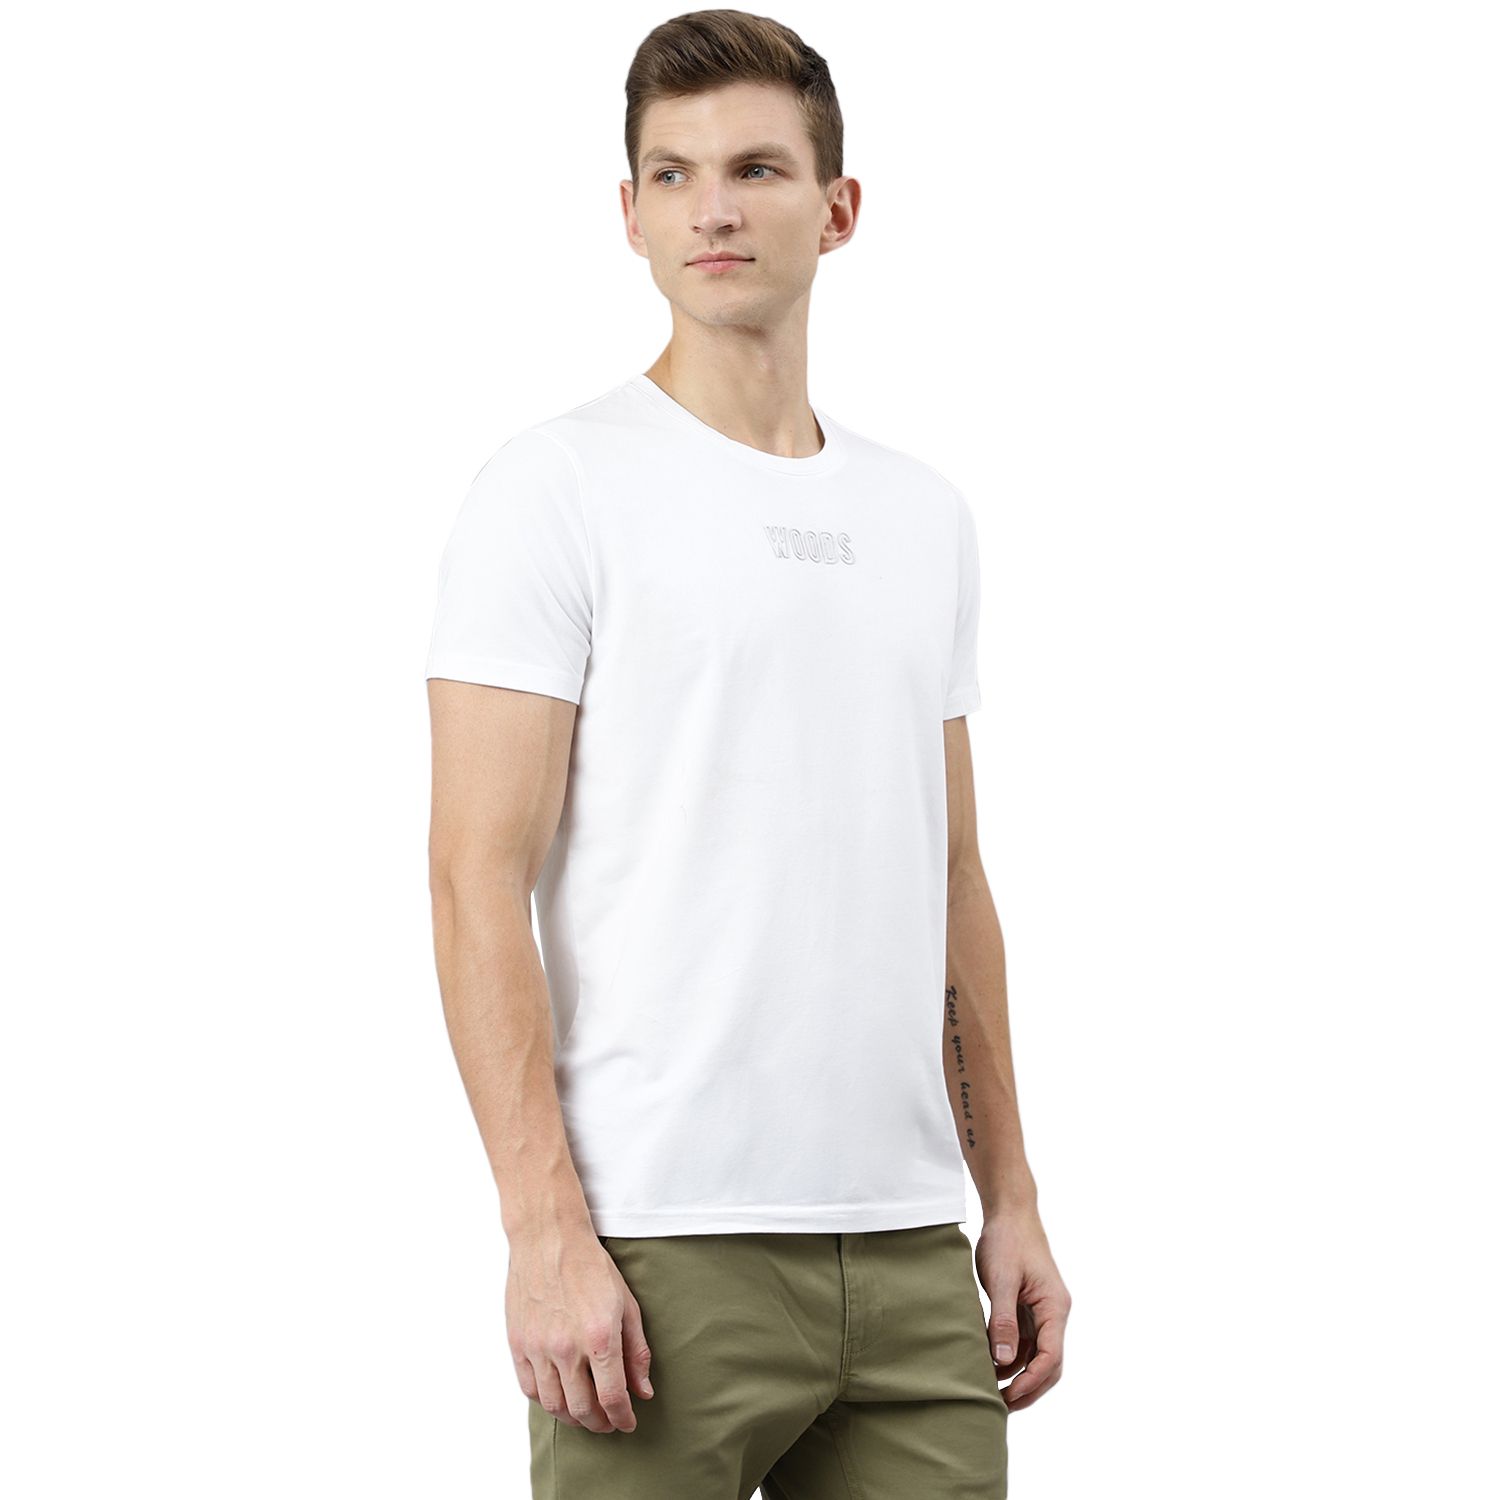 White t-shirt for men